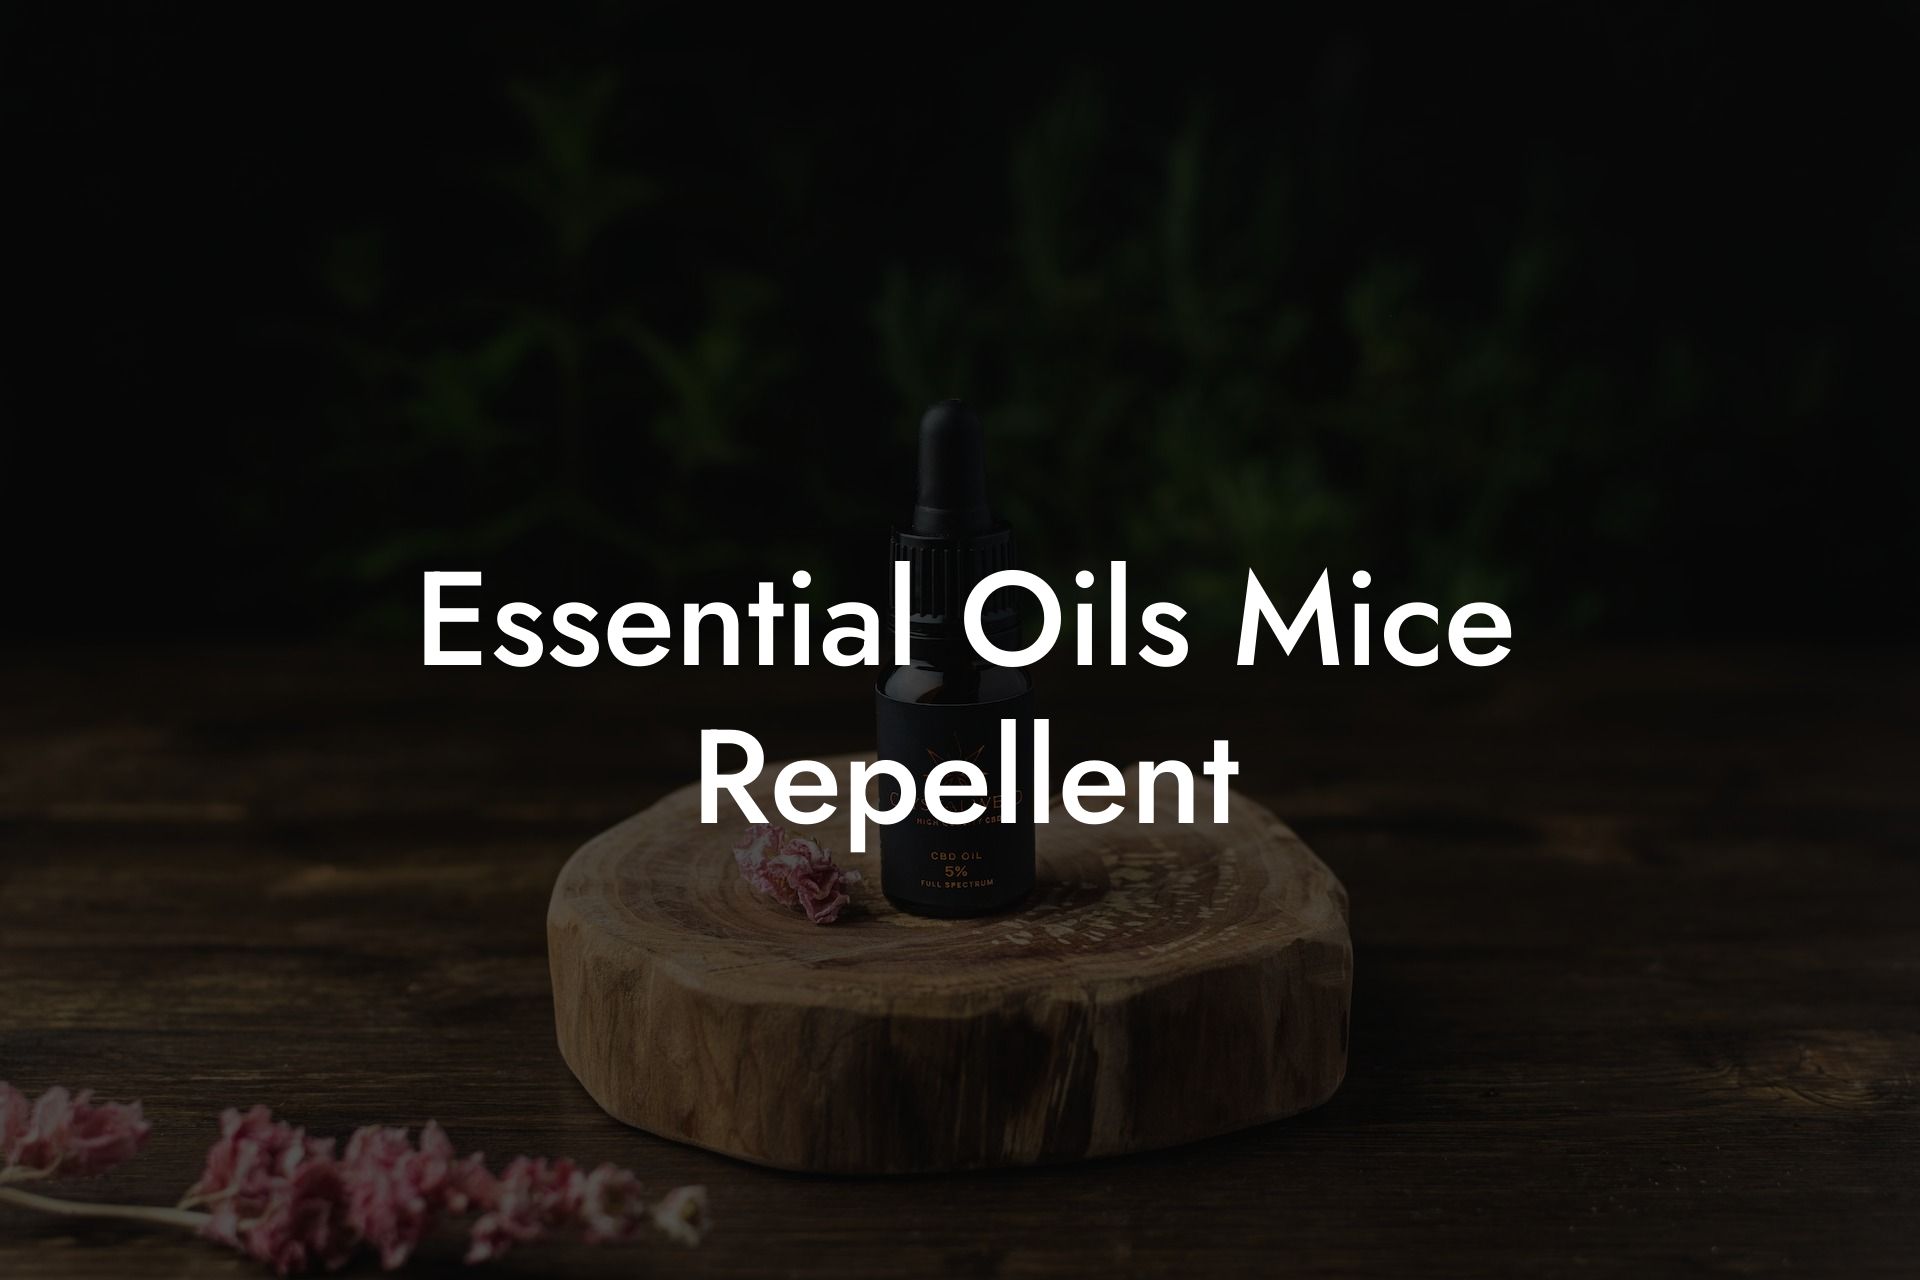 Essential Oils Mice Repellent